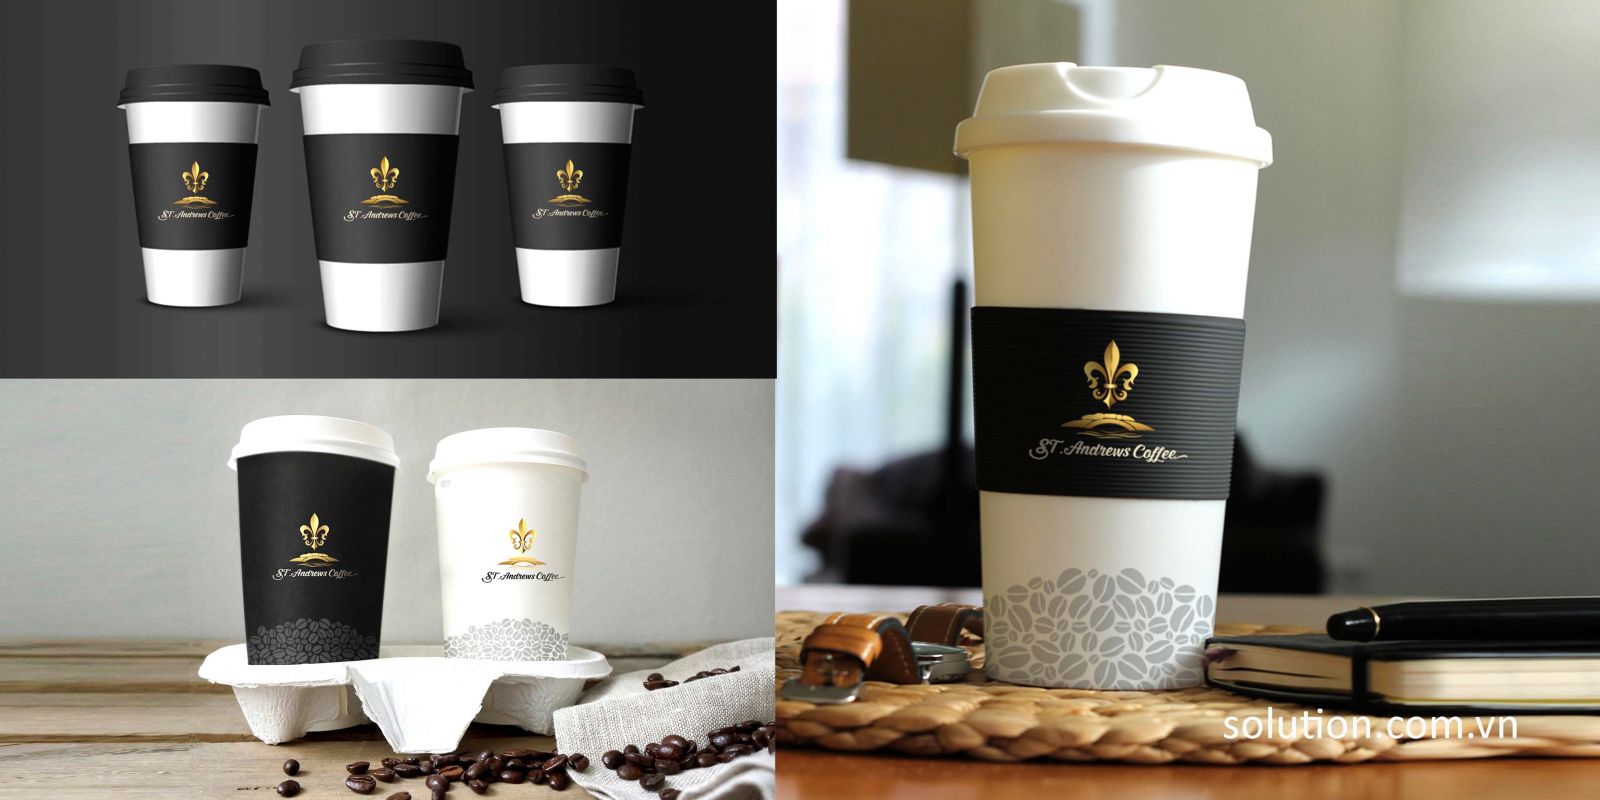 thiet-ke-logo-ST-Andrews-coffee-25